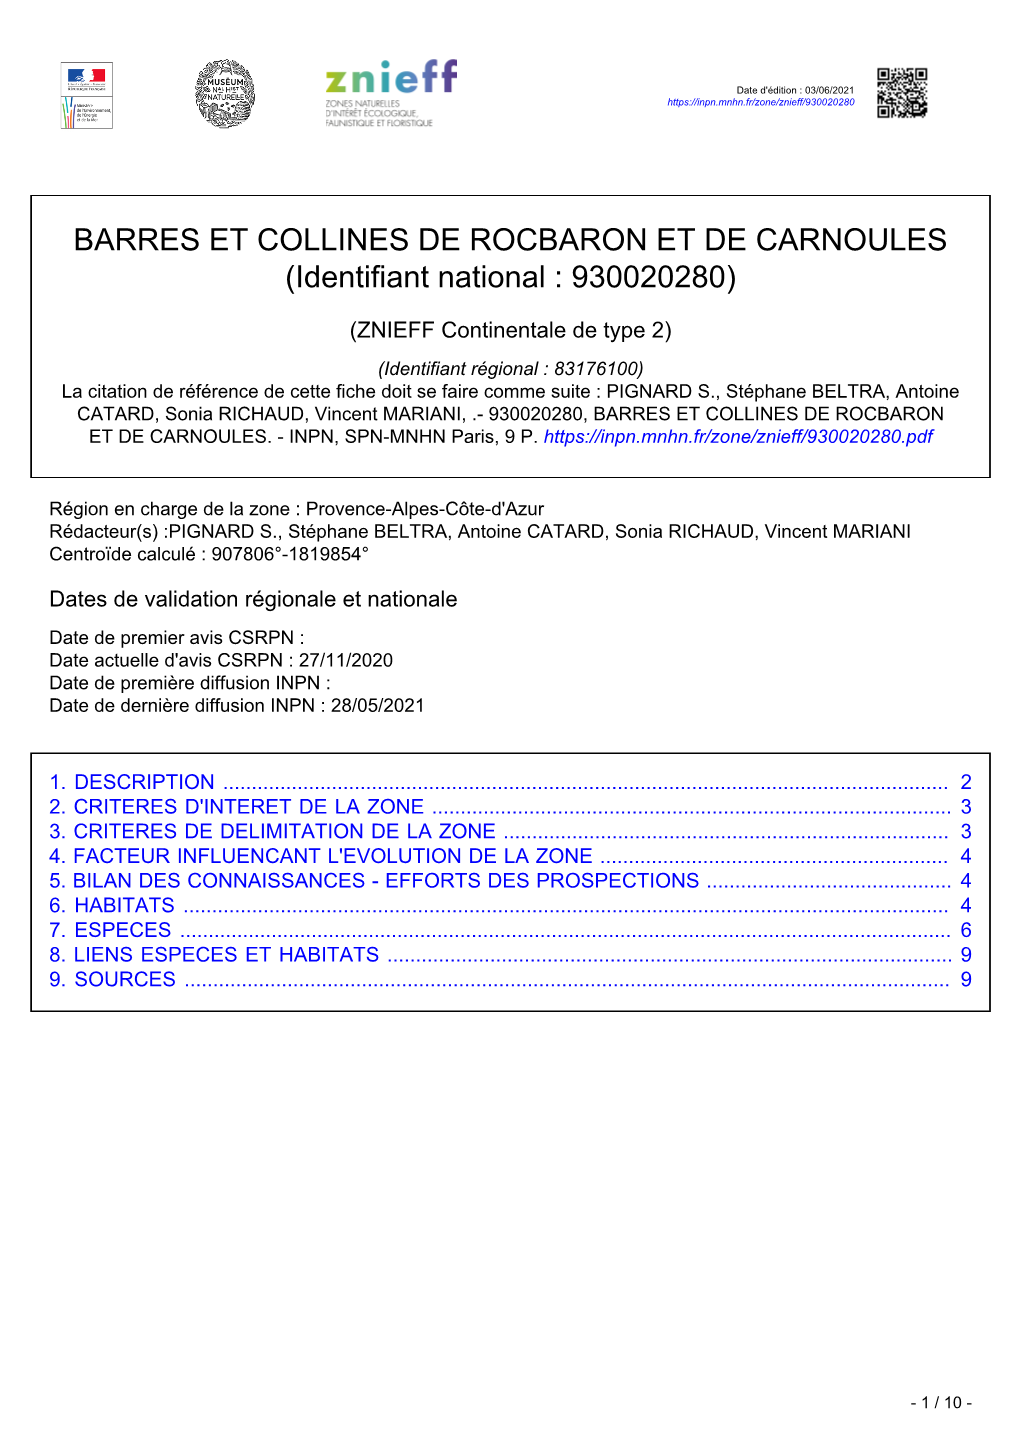 BARRES ET COLLINES DE ROCBARON ET DE CARNOULES (Identifiant National : 930020280)